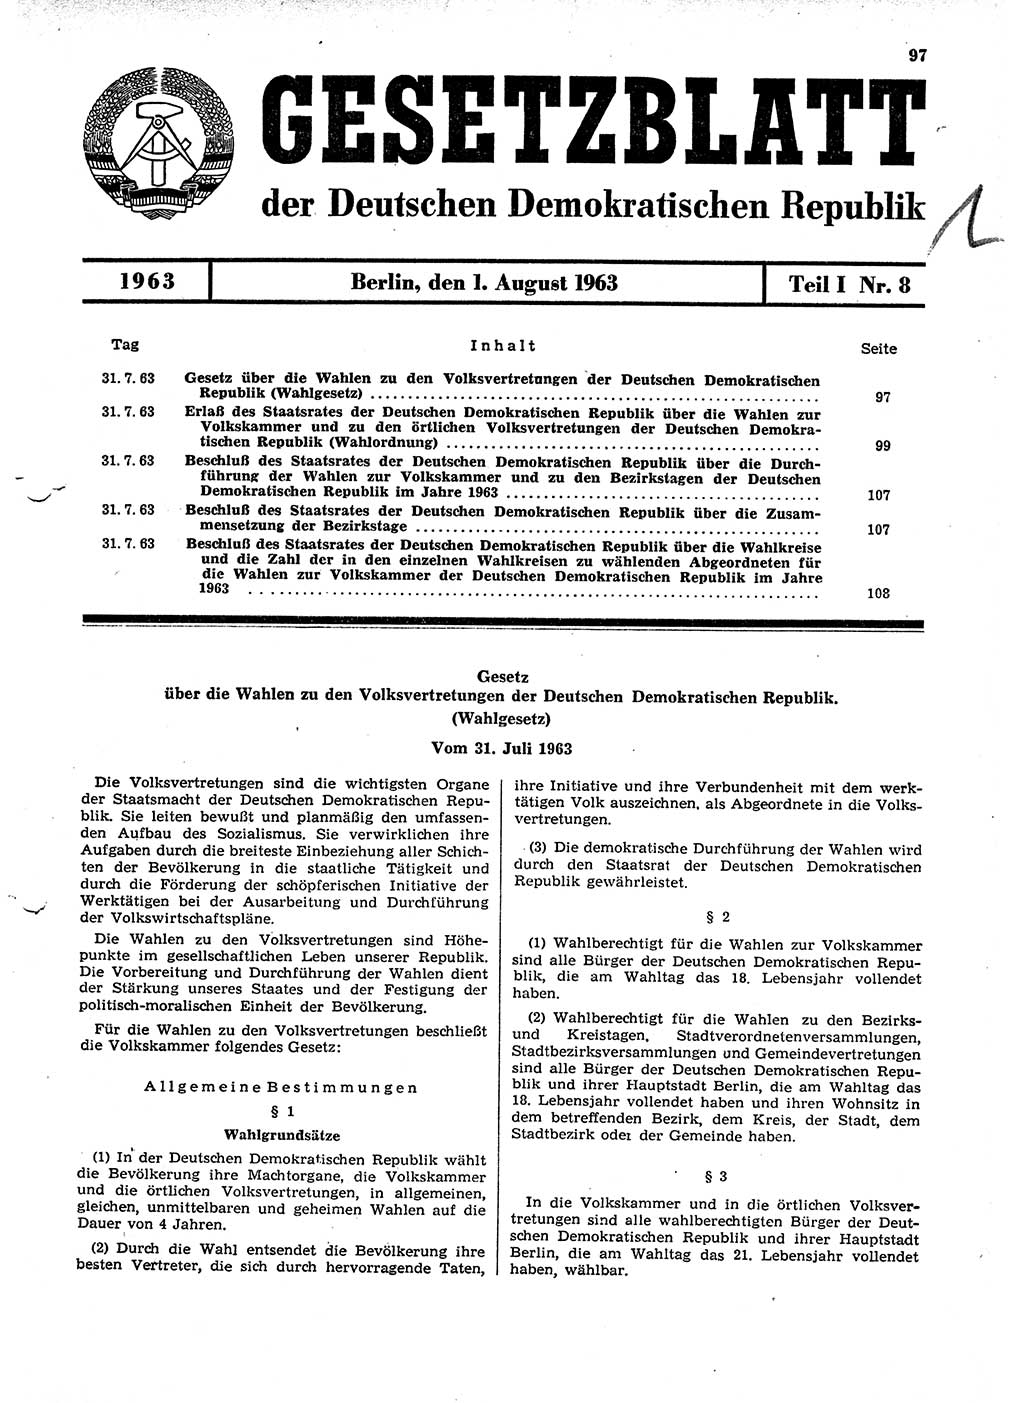 Gesetzblatt (GBl.) der Deutschen Demokratischen Republik (DDR) Teil Ⅰ 1963, Seite 97 (GBl. DDR Ⅰ 1963, S. 97)